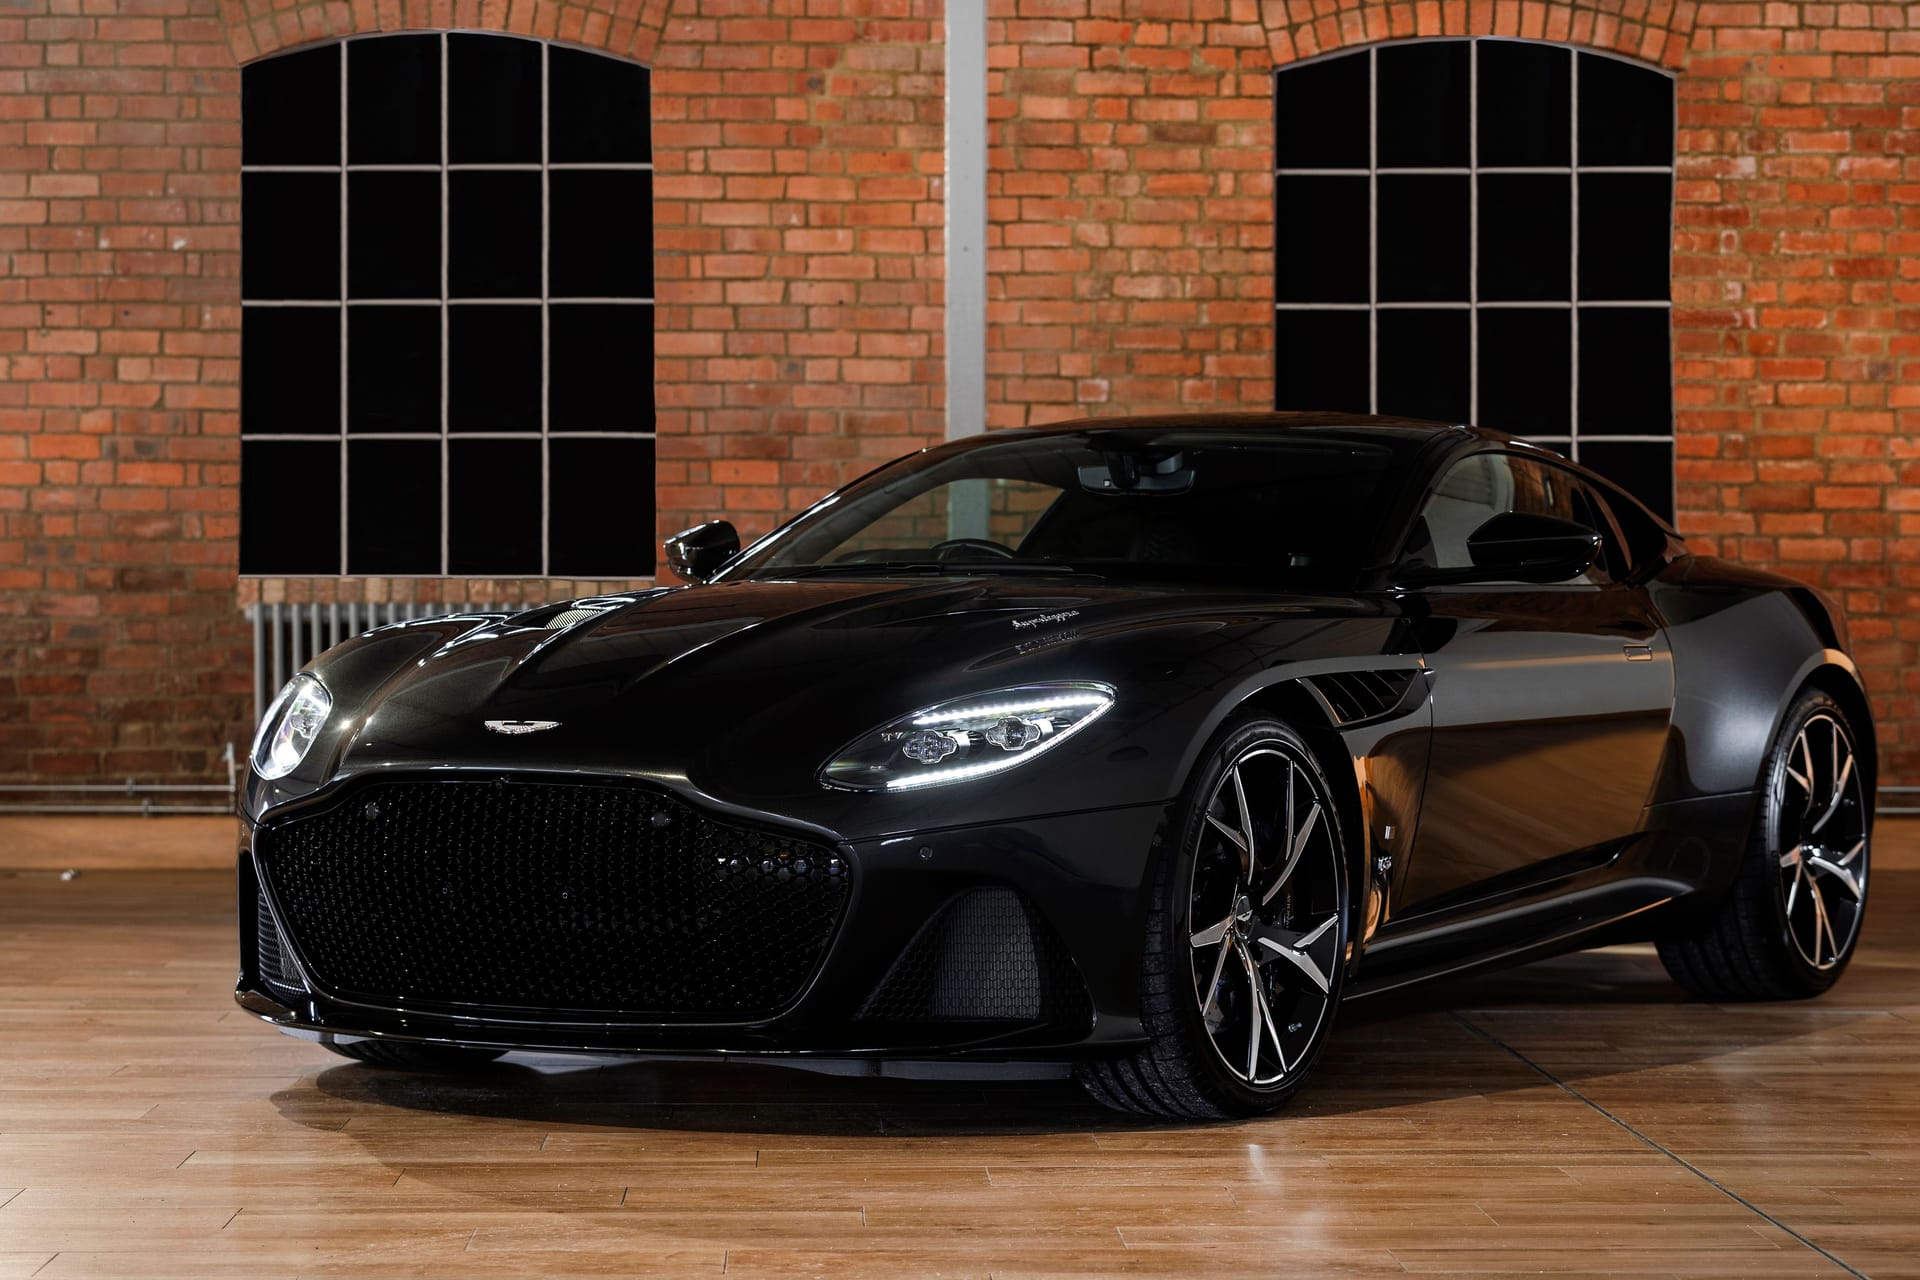 Aston Martin DBS Superleggera: Für den sportlichen Wagen erhofft sich Christie's mindestens 360.000 Euro für den guten Zweck.